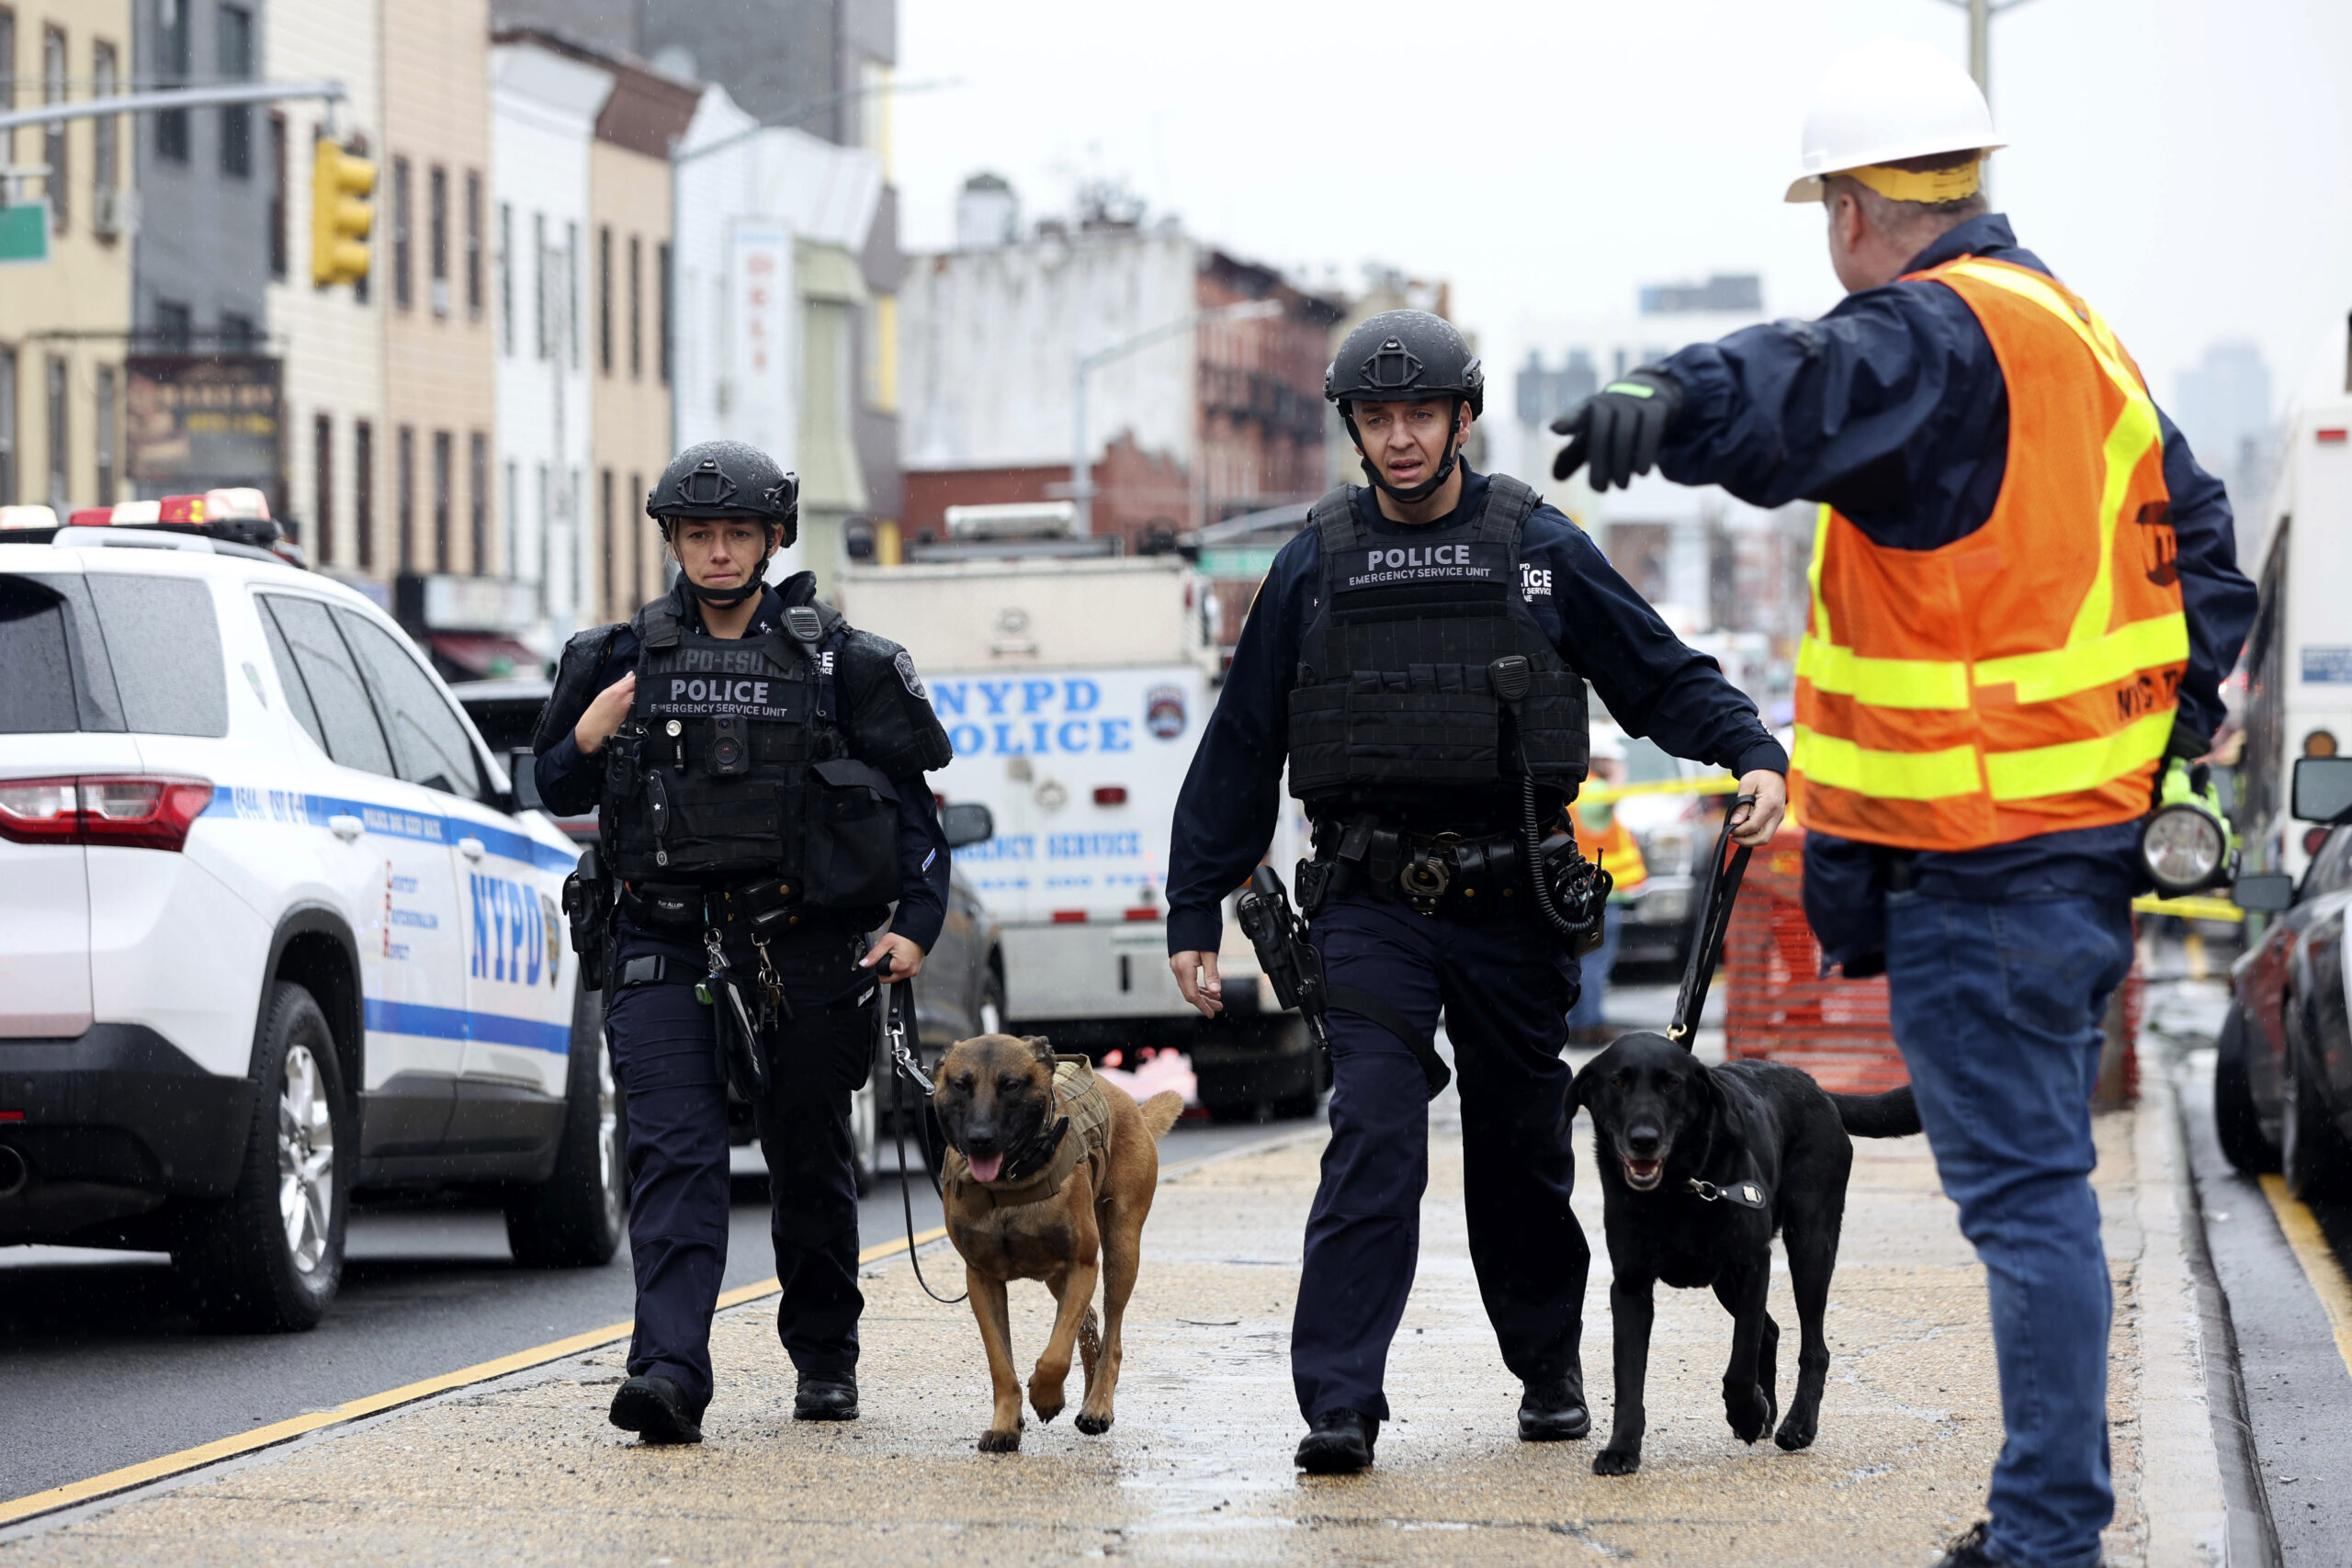 Polizisten gehen mit Bombenspürhunden in der Nähe des Tatorts an der New Yorker U-Bahn die Straße entlang.